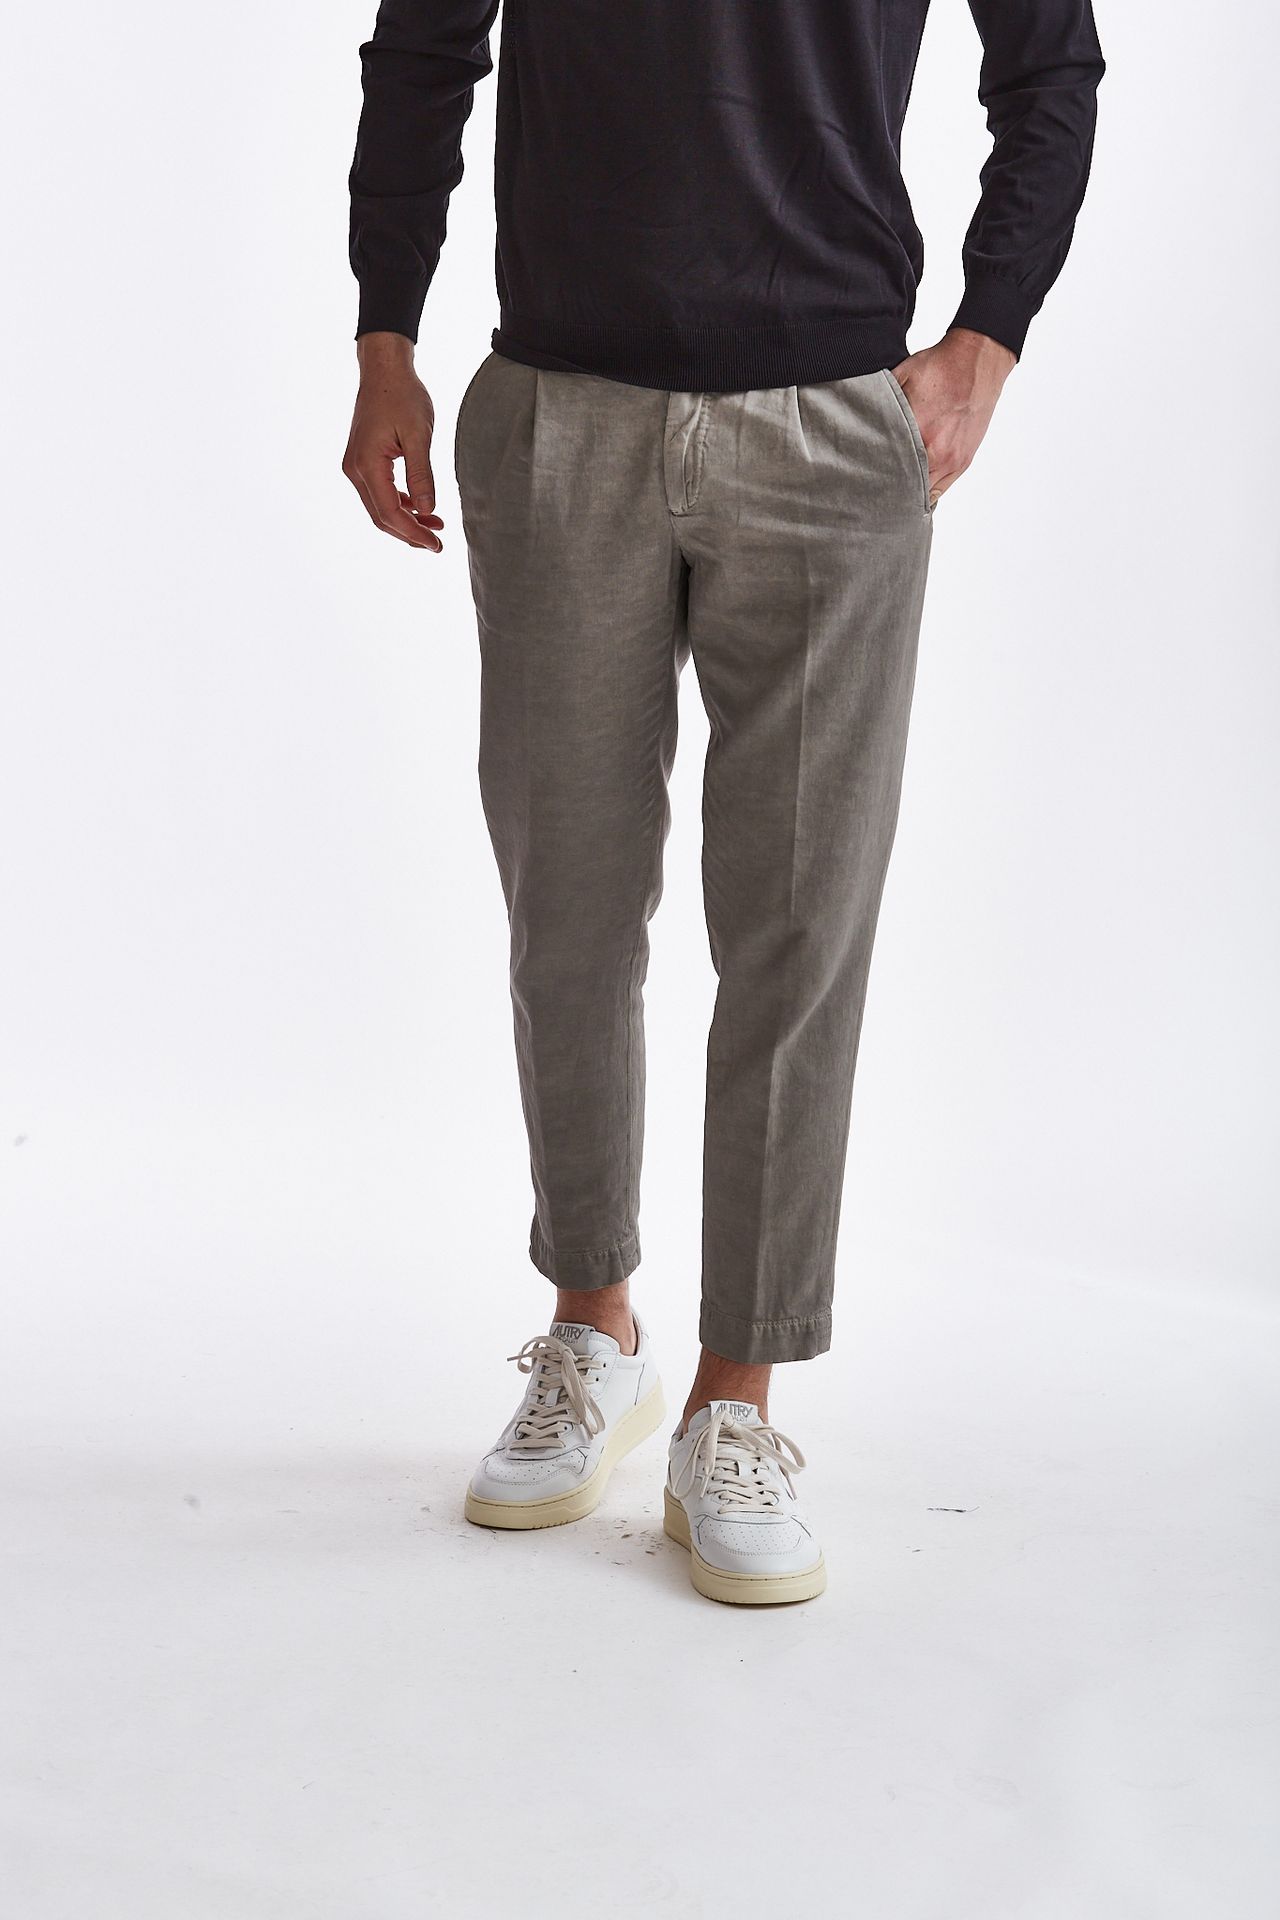 Pantalone lino/cotone grigio